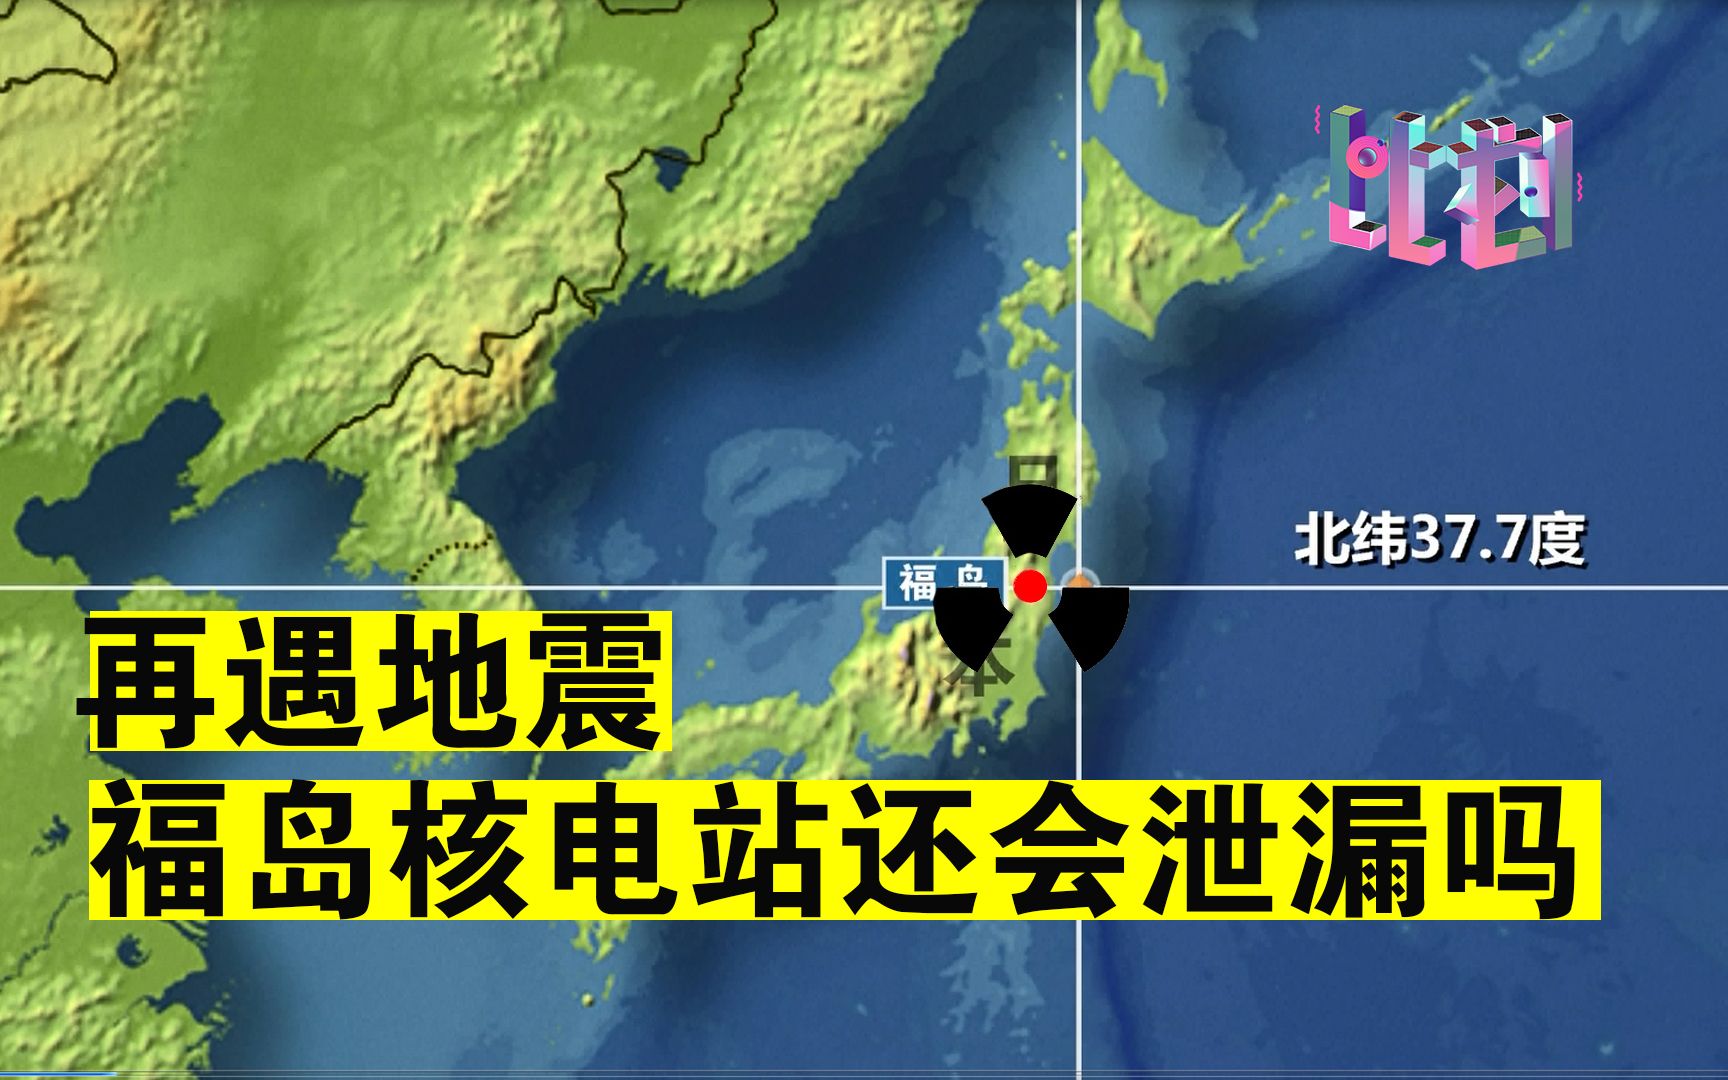 日本又地震了 福岛核电站还会泄漏吗？